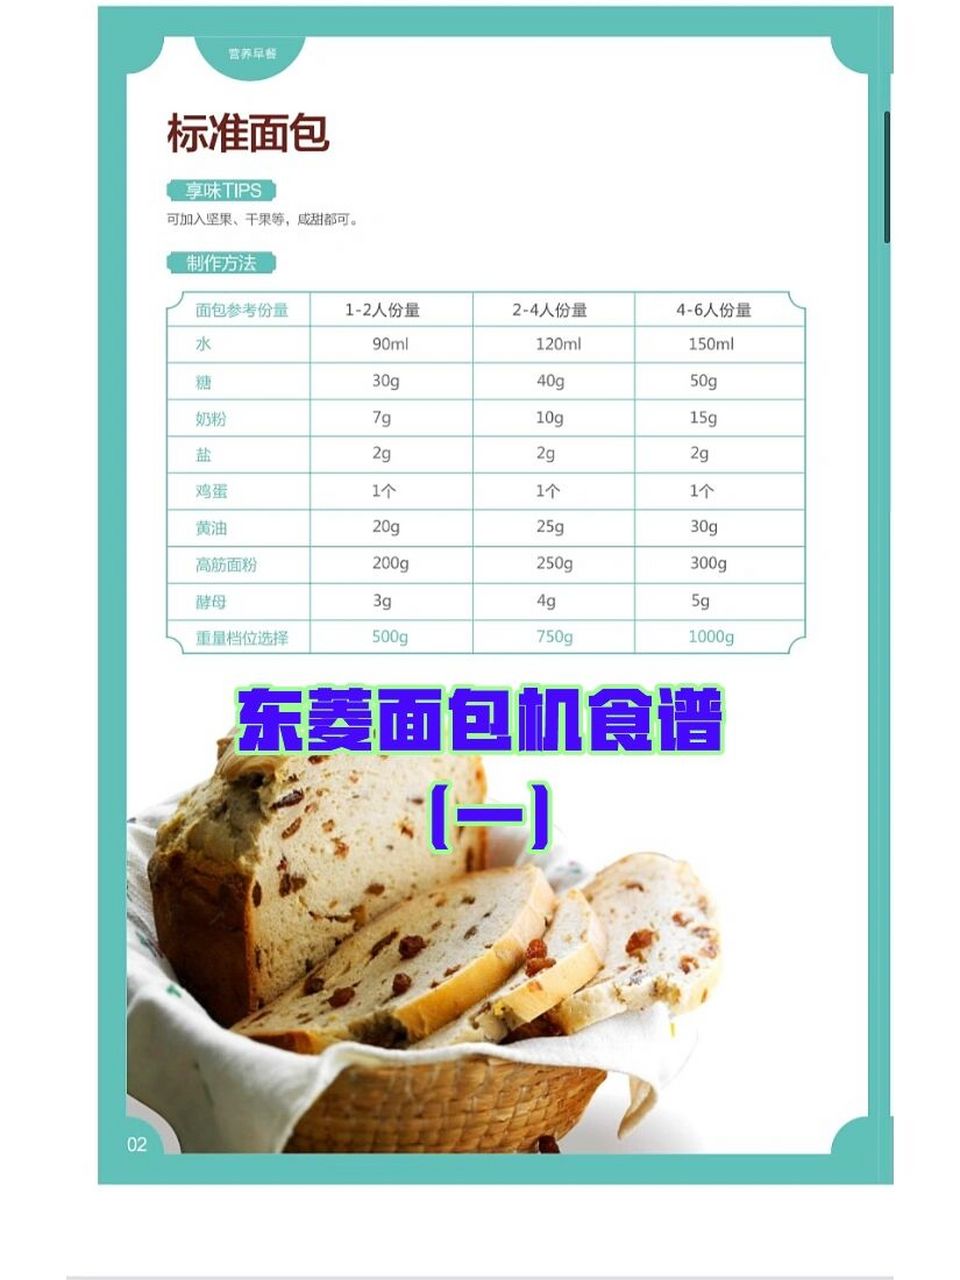 东陵面包机食谱图片